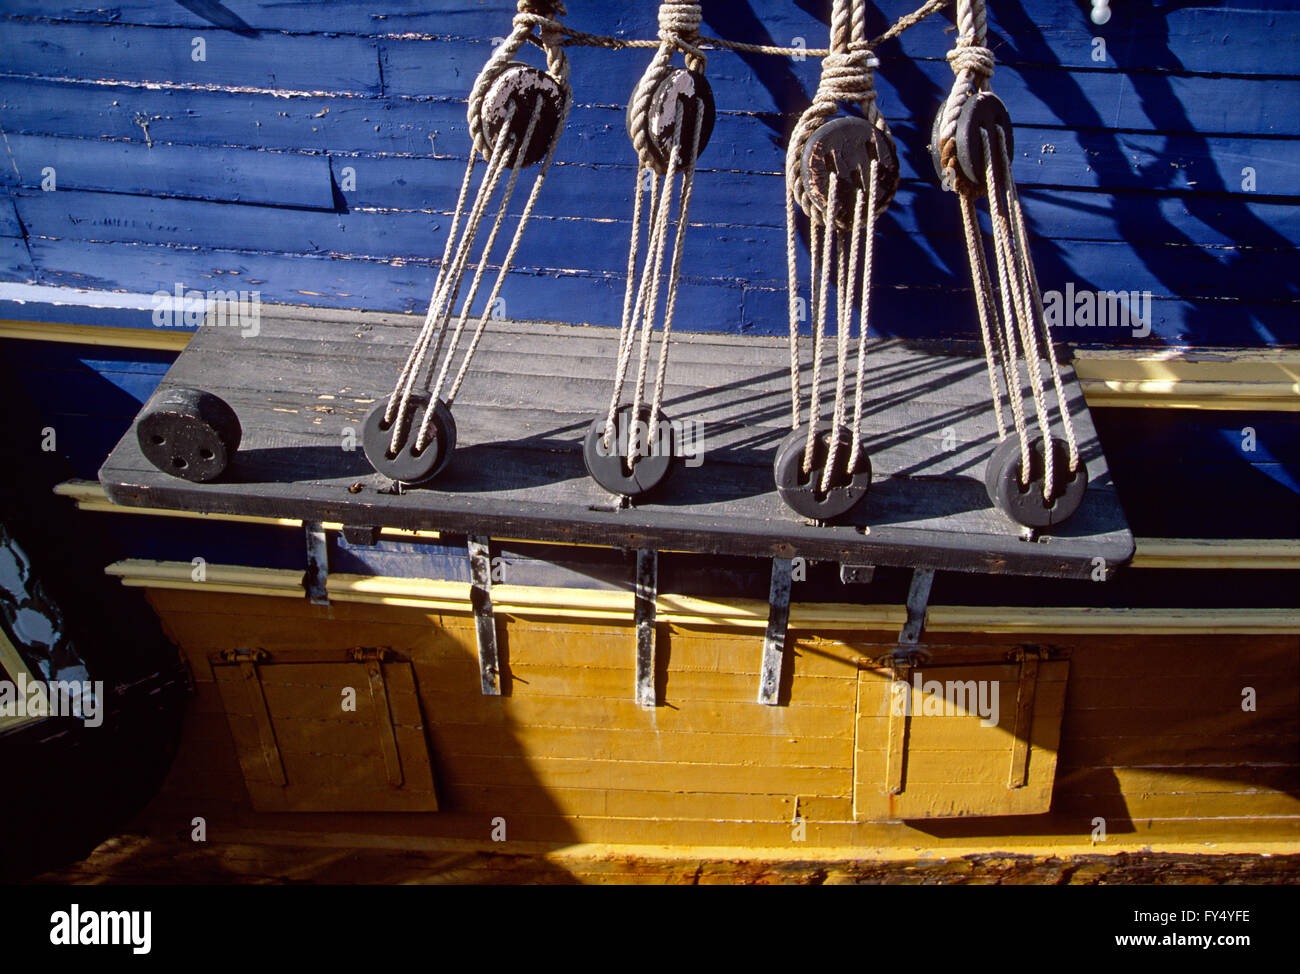 Nahaufnahme der Segel Takelagen auf historischen Segelboot; Schoner; Cape Town Hafen; Kap-Halbinsel; Südafrika Stockfoto